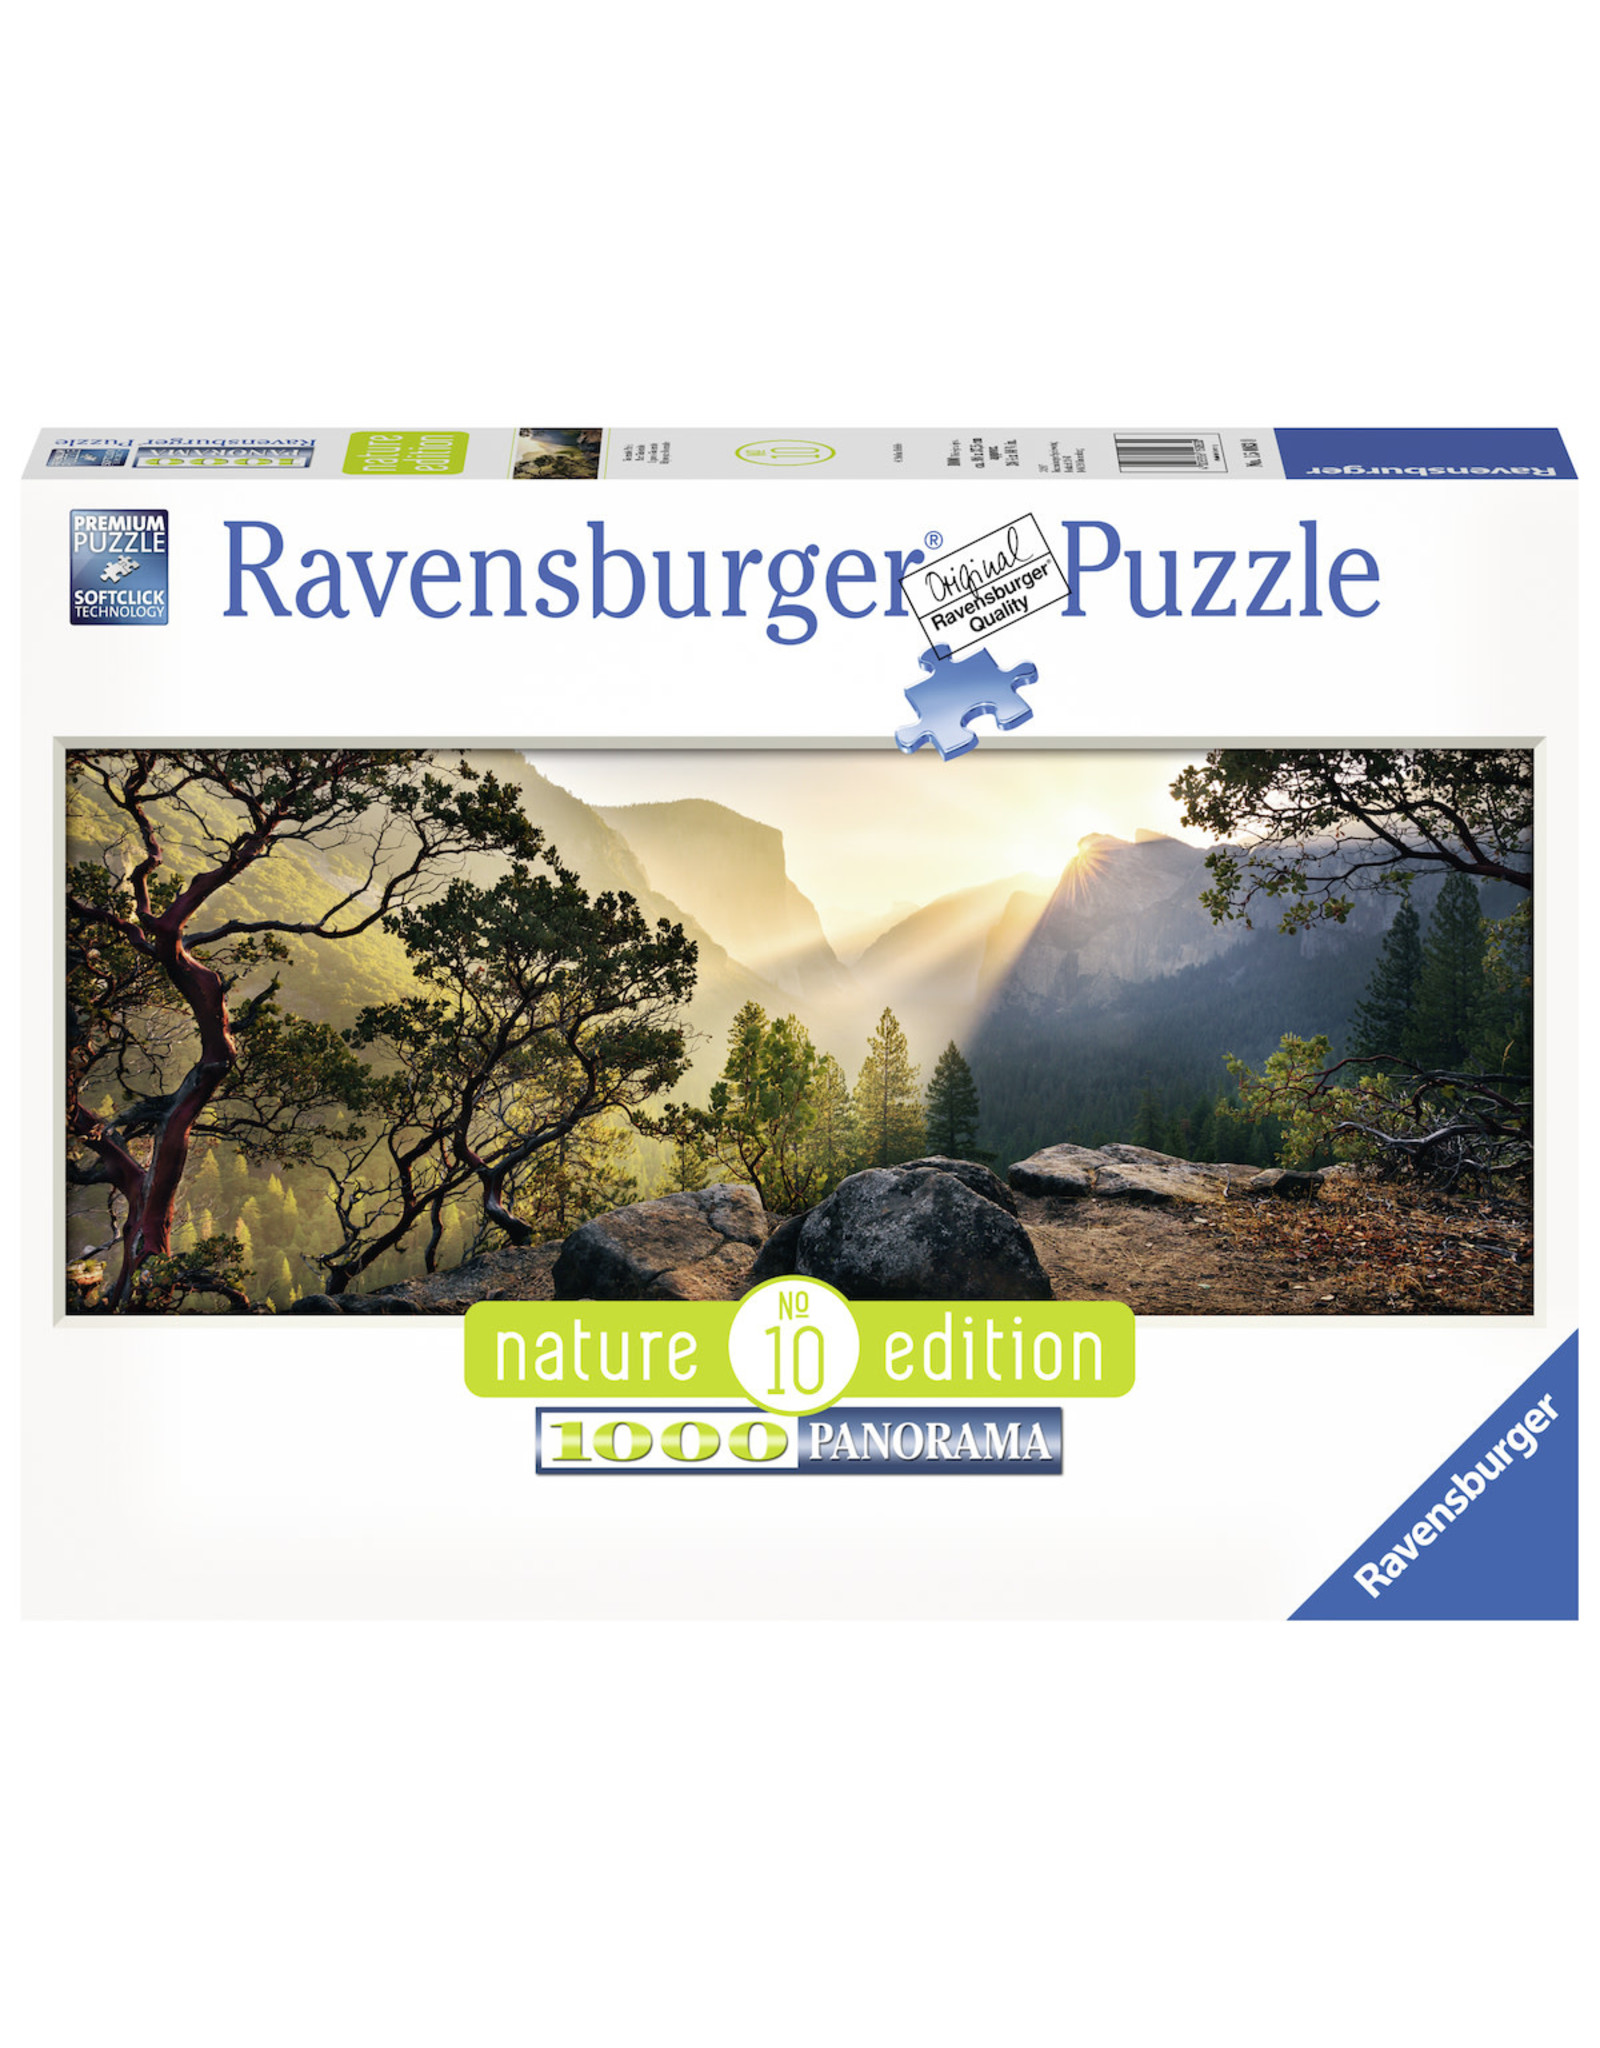 Ravensburger Ravensburger Puzzel 150830 Yosemite Park Nature Edition No 10 - 1000 stukjes